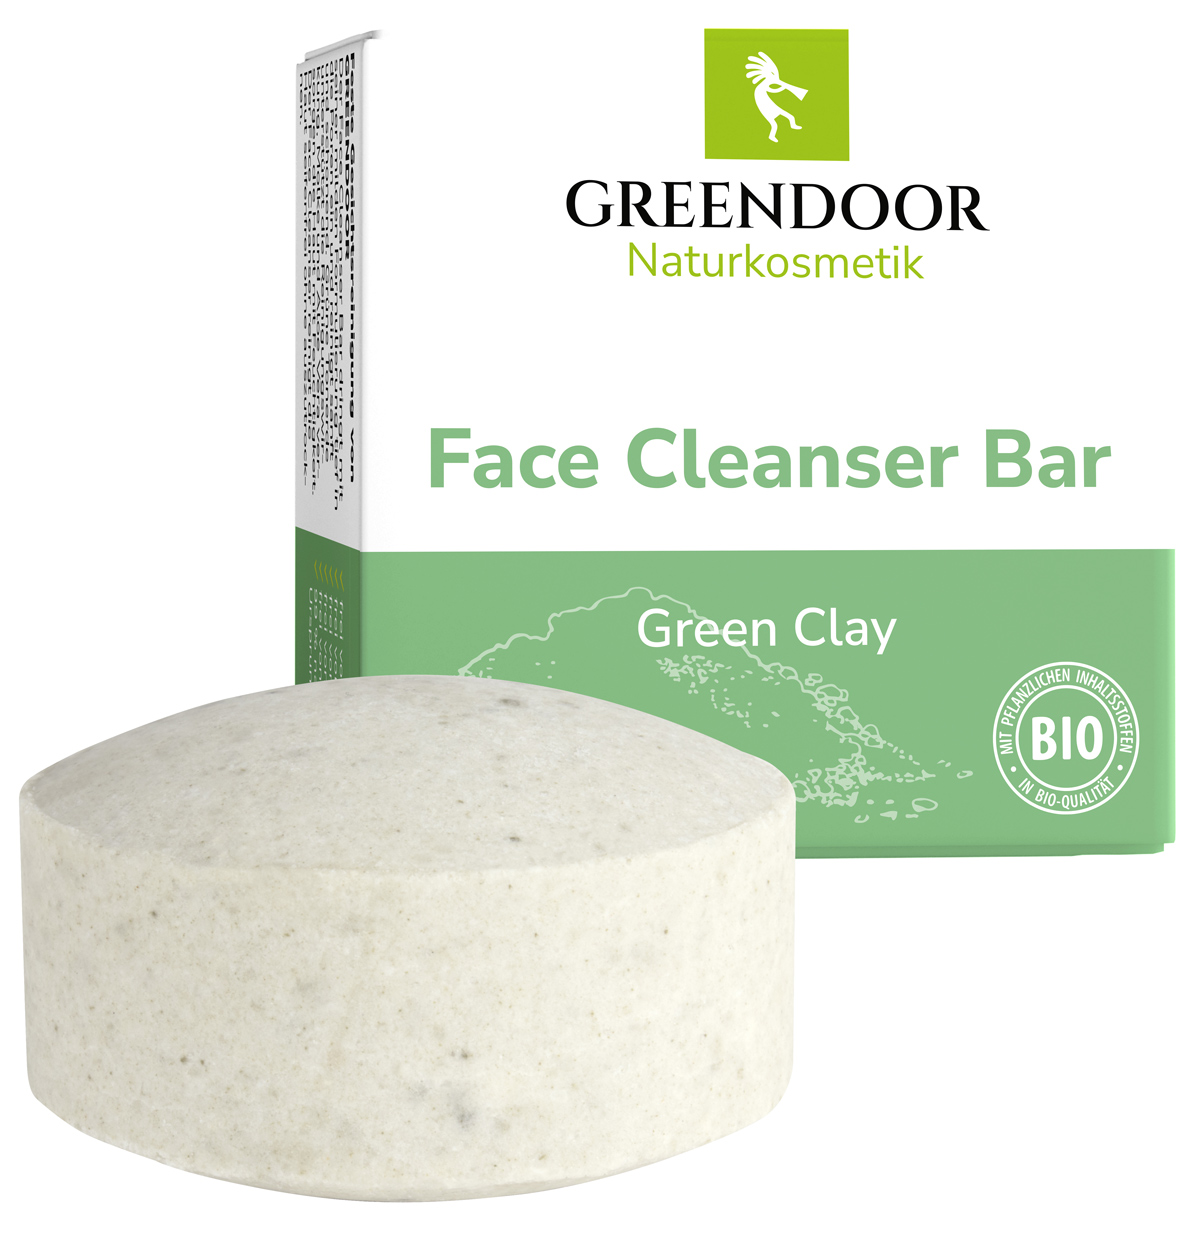 Face Cleanser Bar Green Clay, mit grüner Tonerde, seifenfreie Gesichtsreinigung 57g